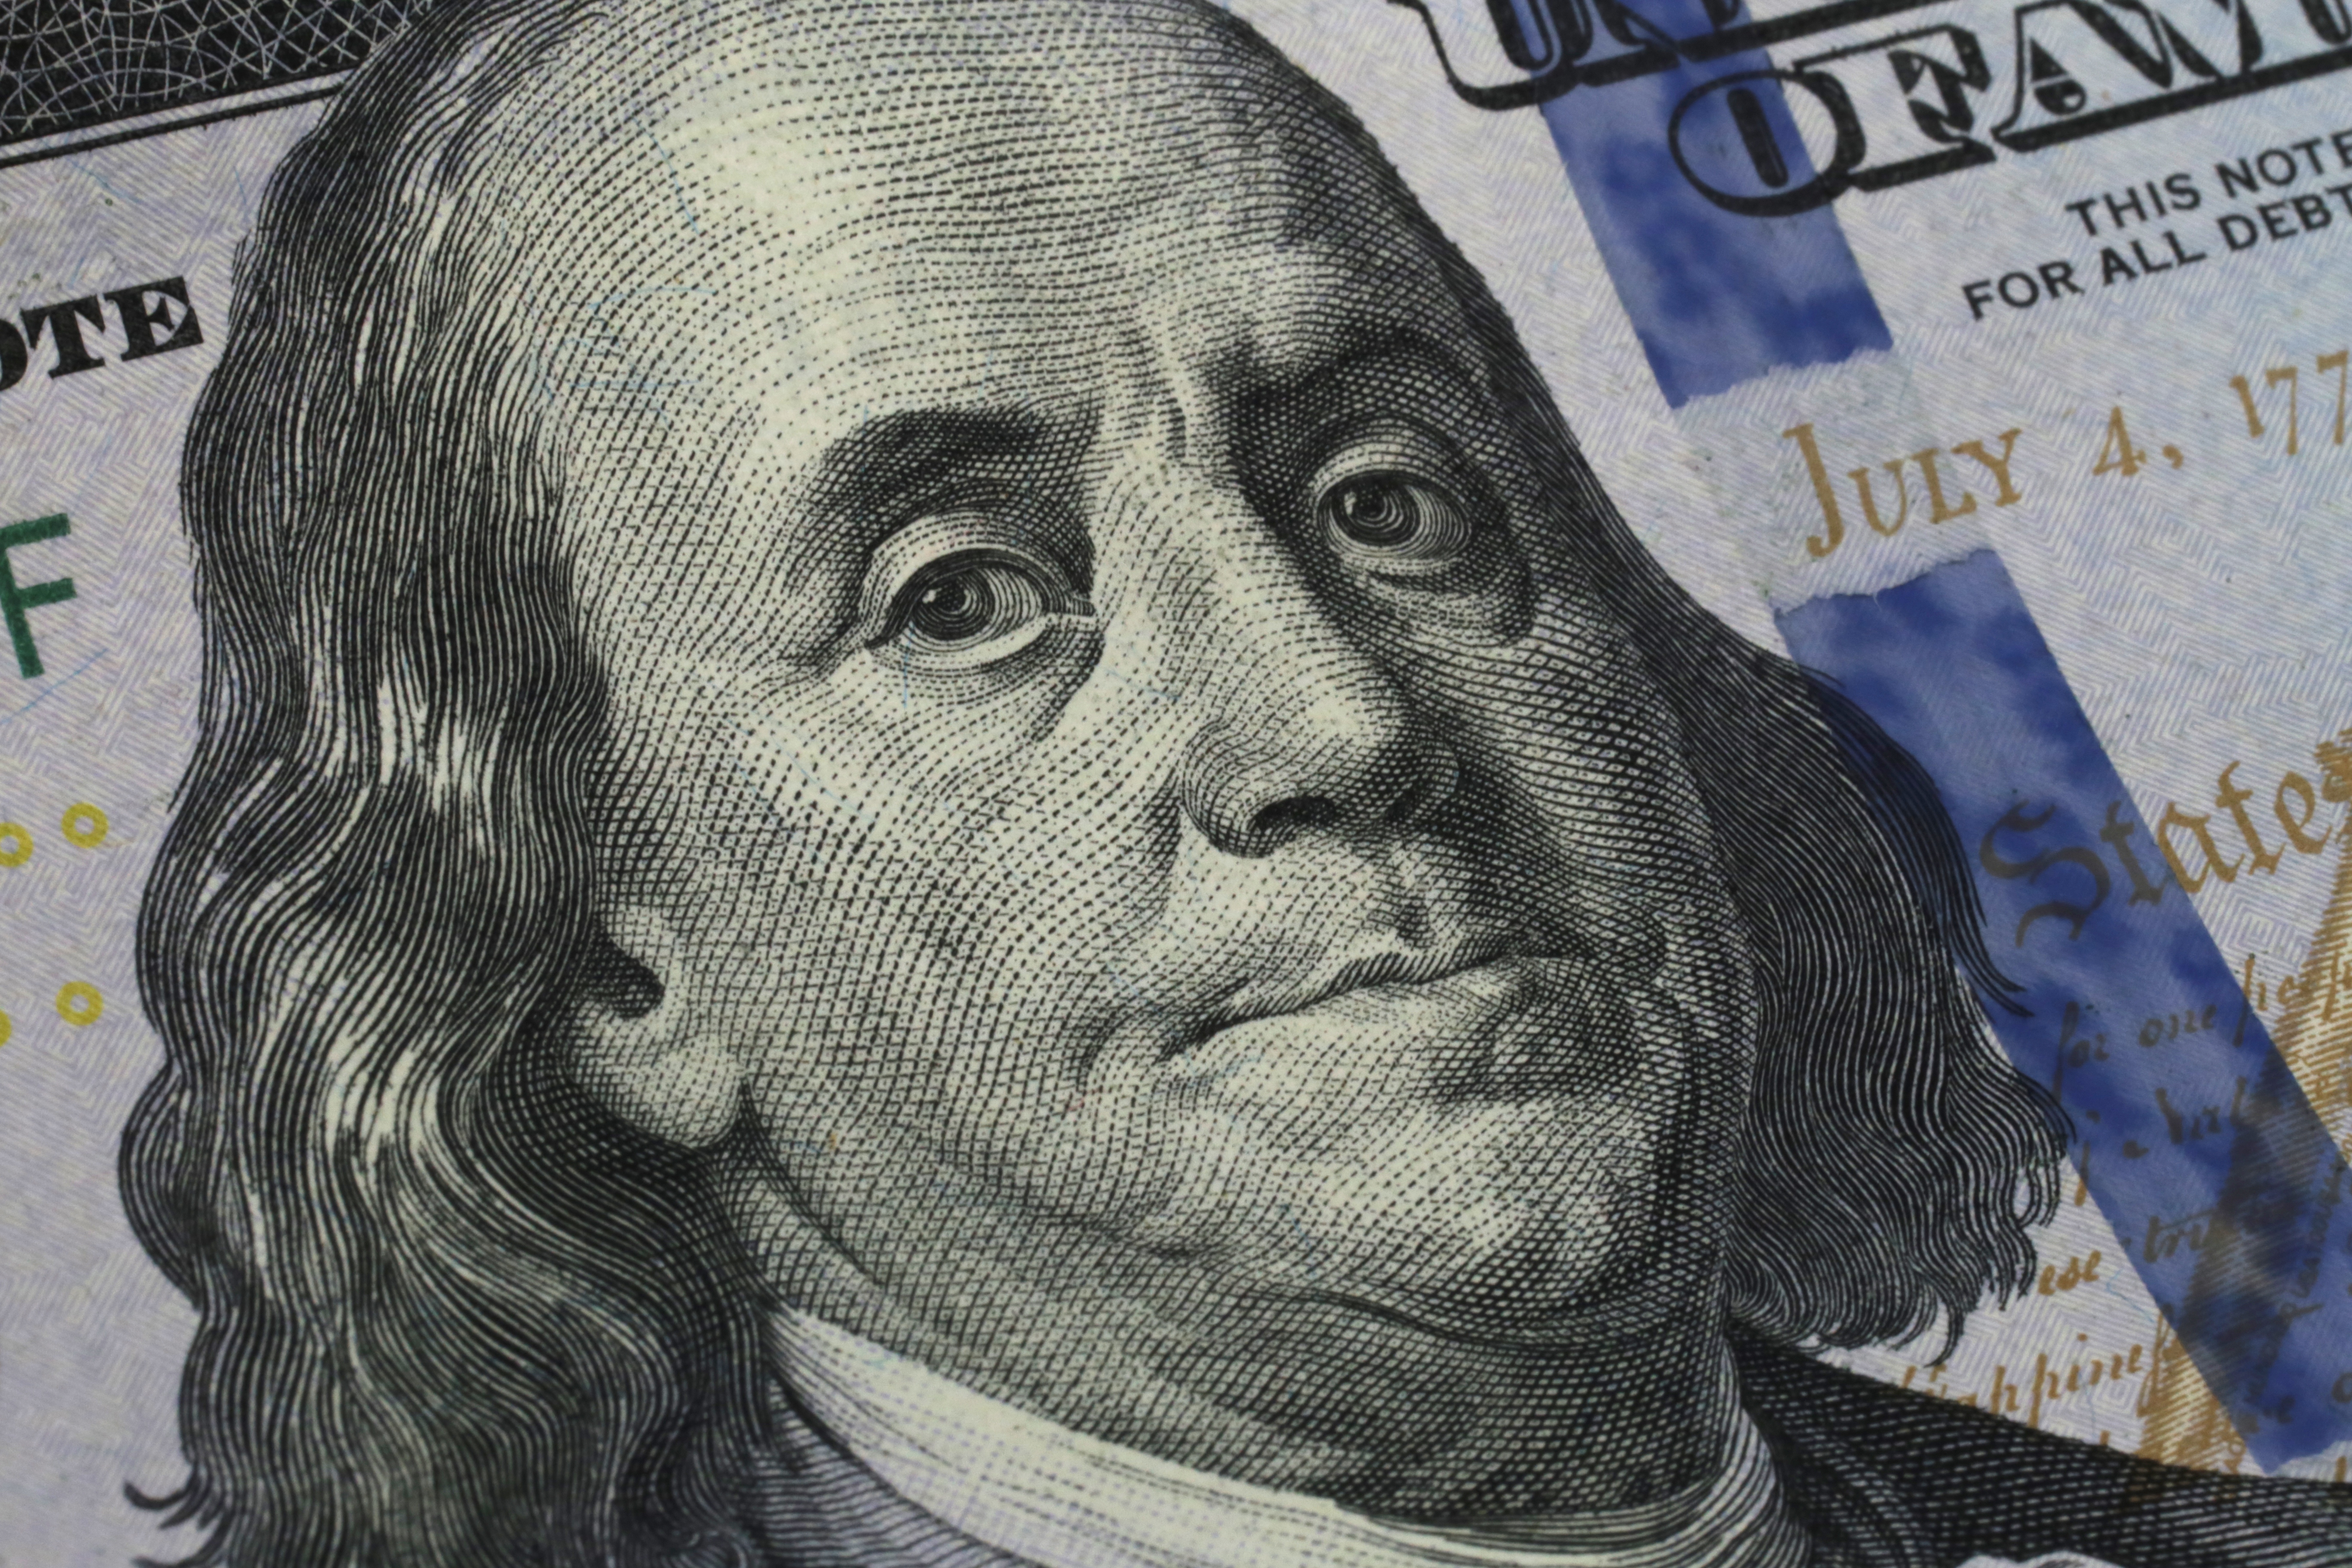 Benjamin Franklin on the hundred dollar bill 